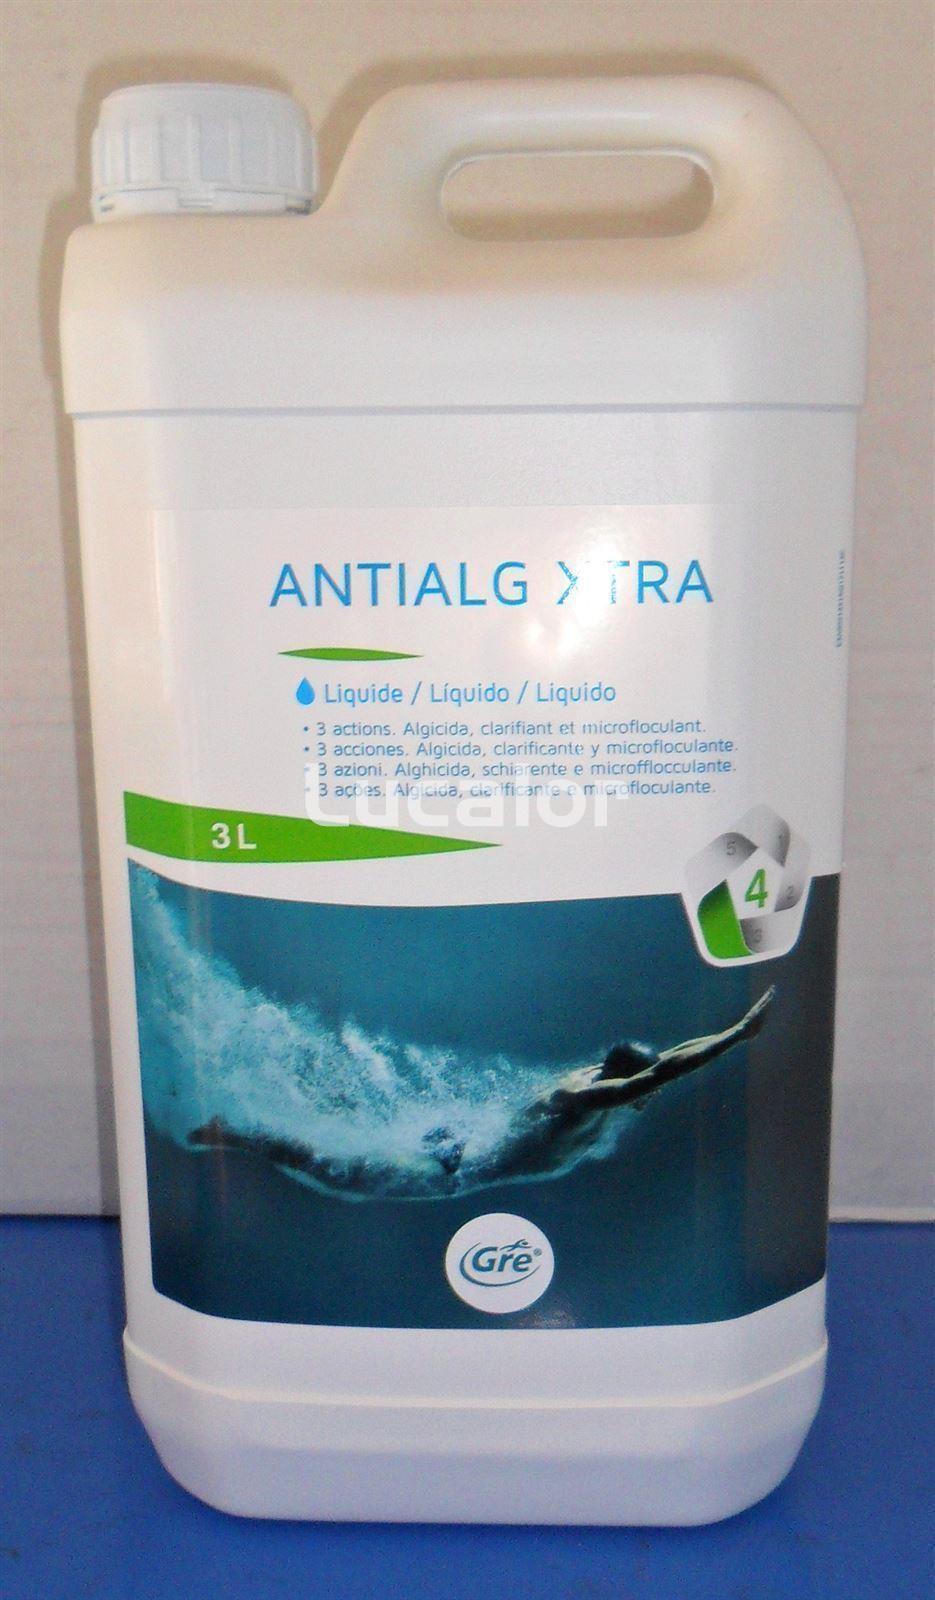 Antialas envase 3 litros de gre - Imagen 1